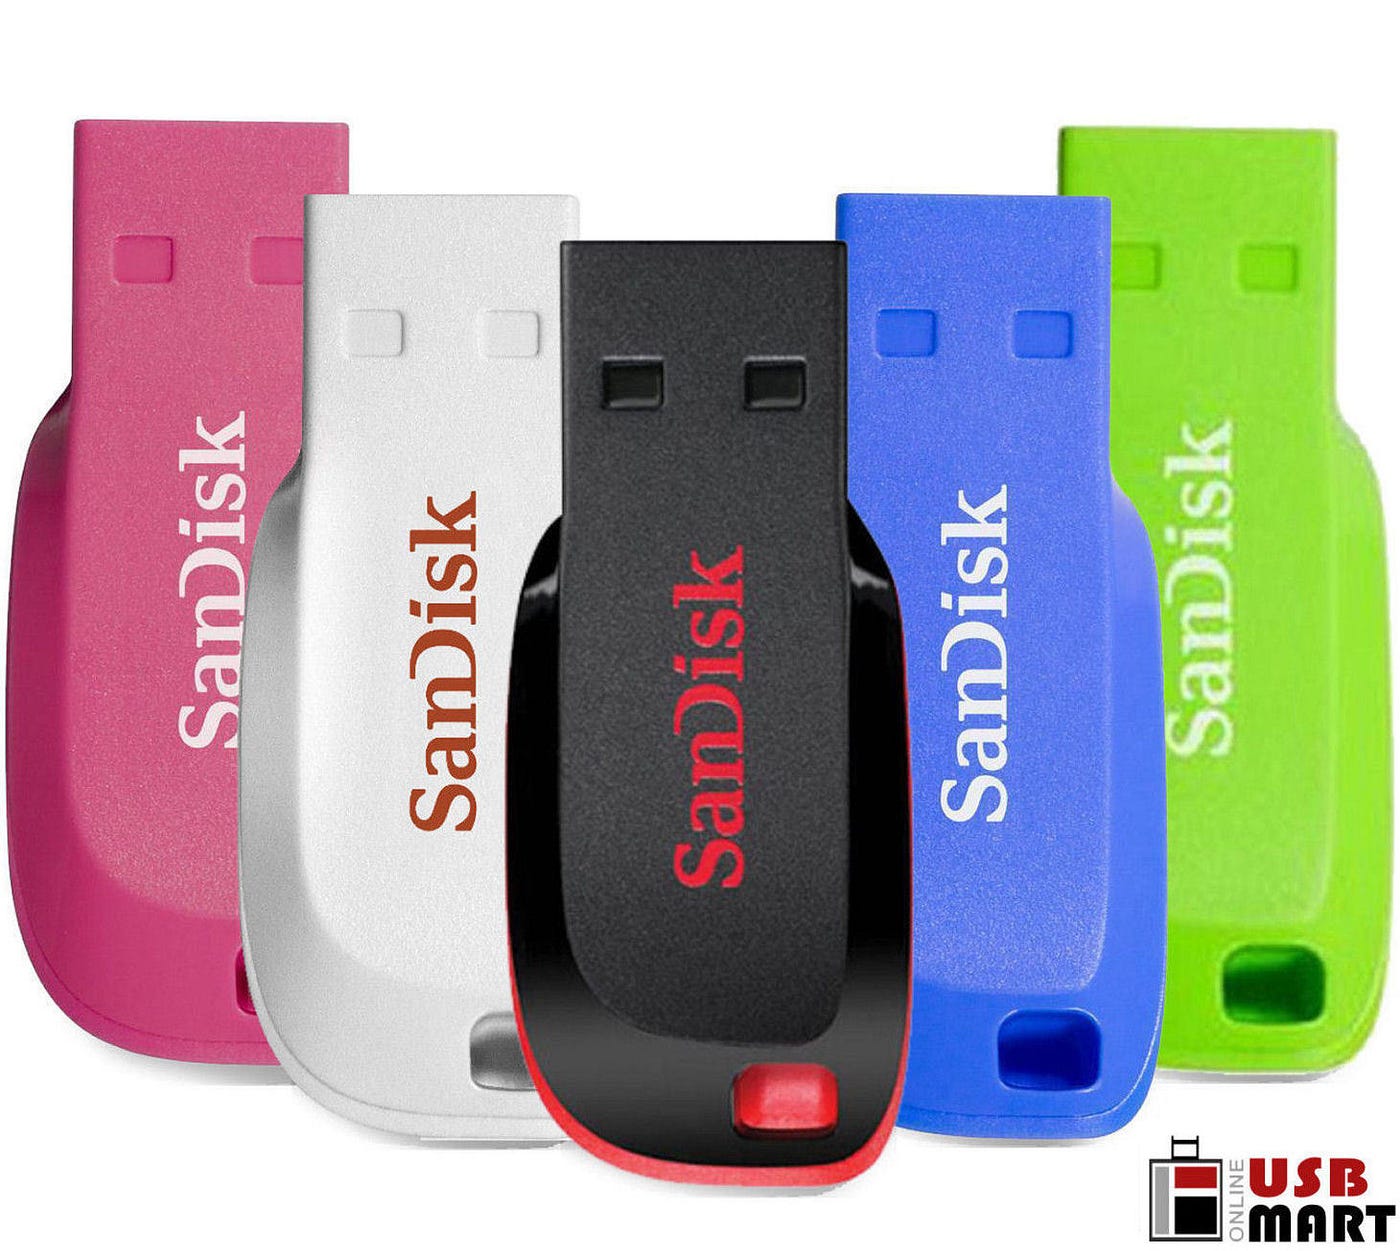 Clé USB Cruzer Blade – 8/16/32/64 Go – USB 2.0 SANDISK – Skyran